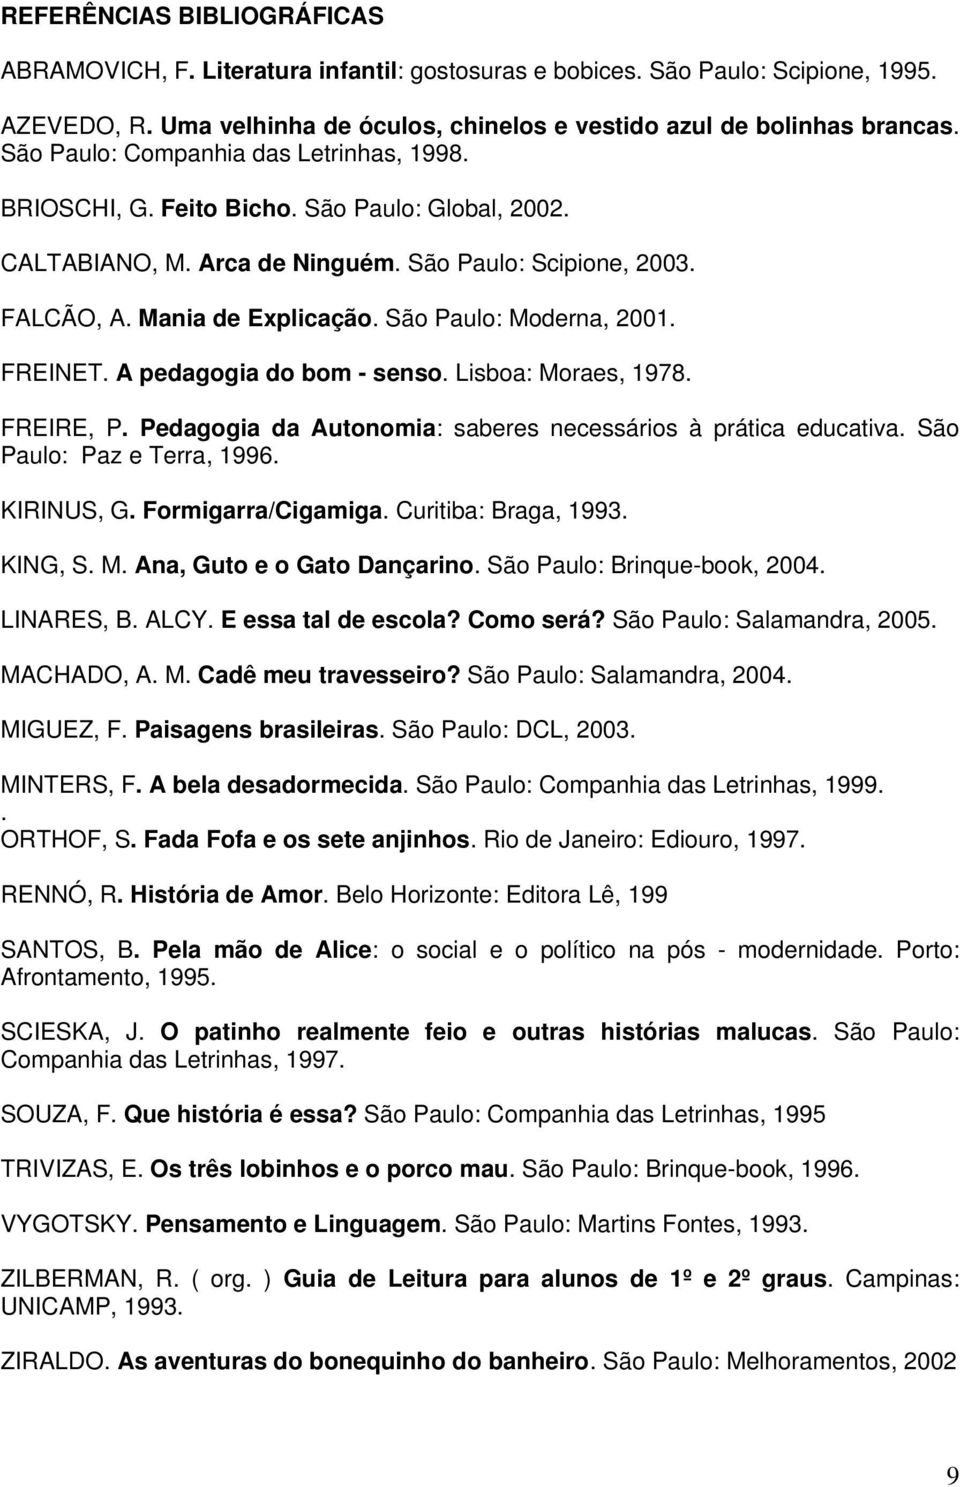 São Paulo: Moderna, 2001. FREINET. A pedagogia do bom - senso. Lisboa: Moraes, 1978. FREIRE, P. Pedagogia da Autonomia: saberes necessários à prática educativa. São Paulo: Paz e Terra, 1996.